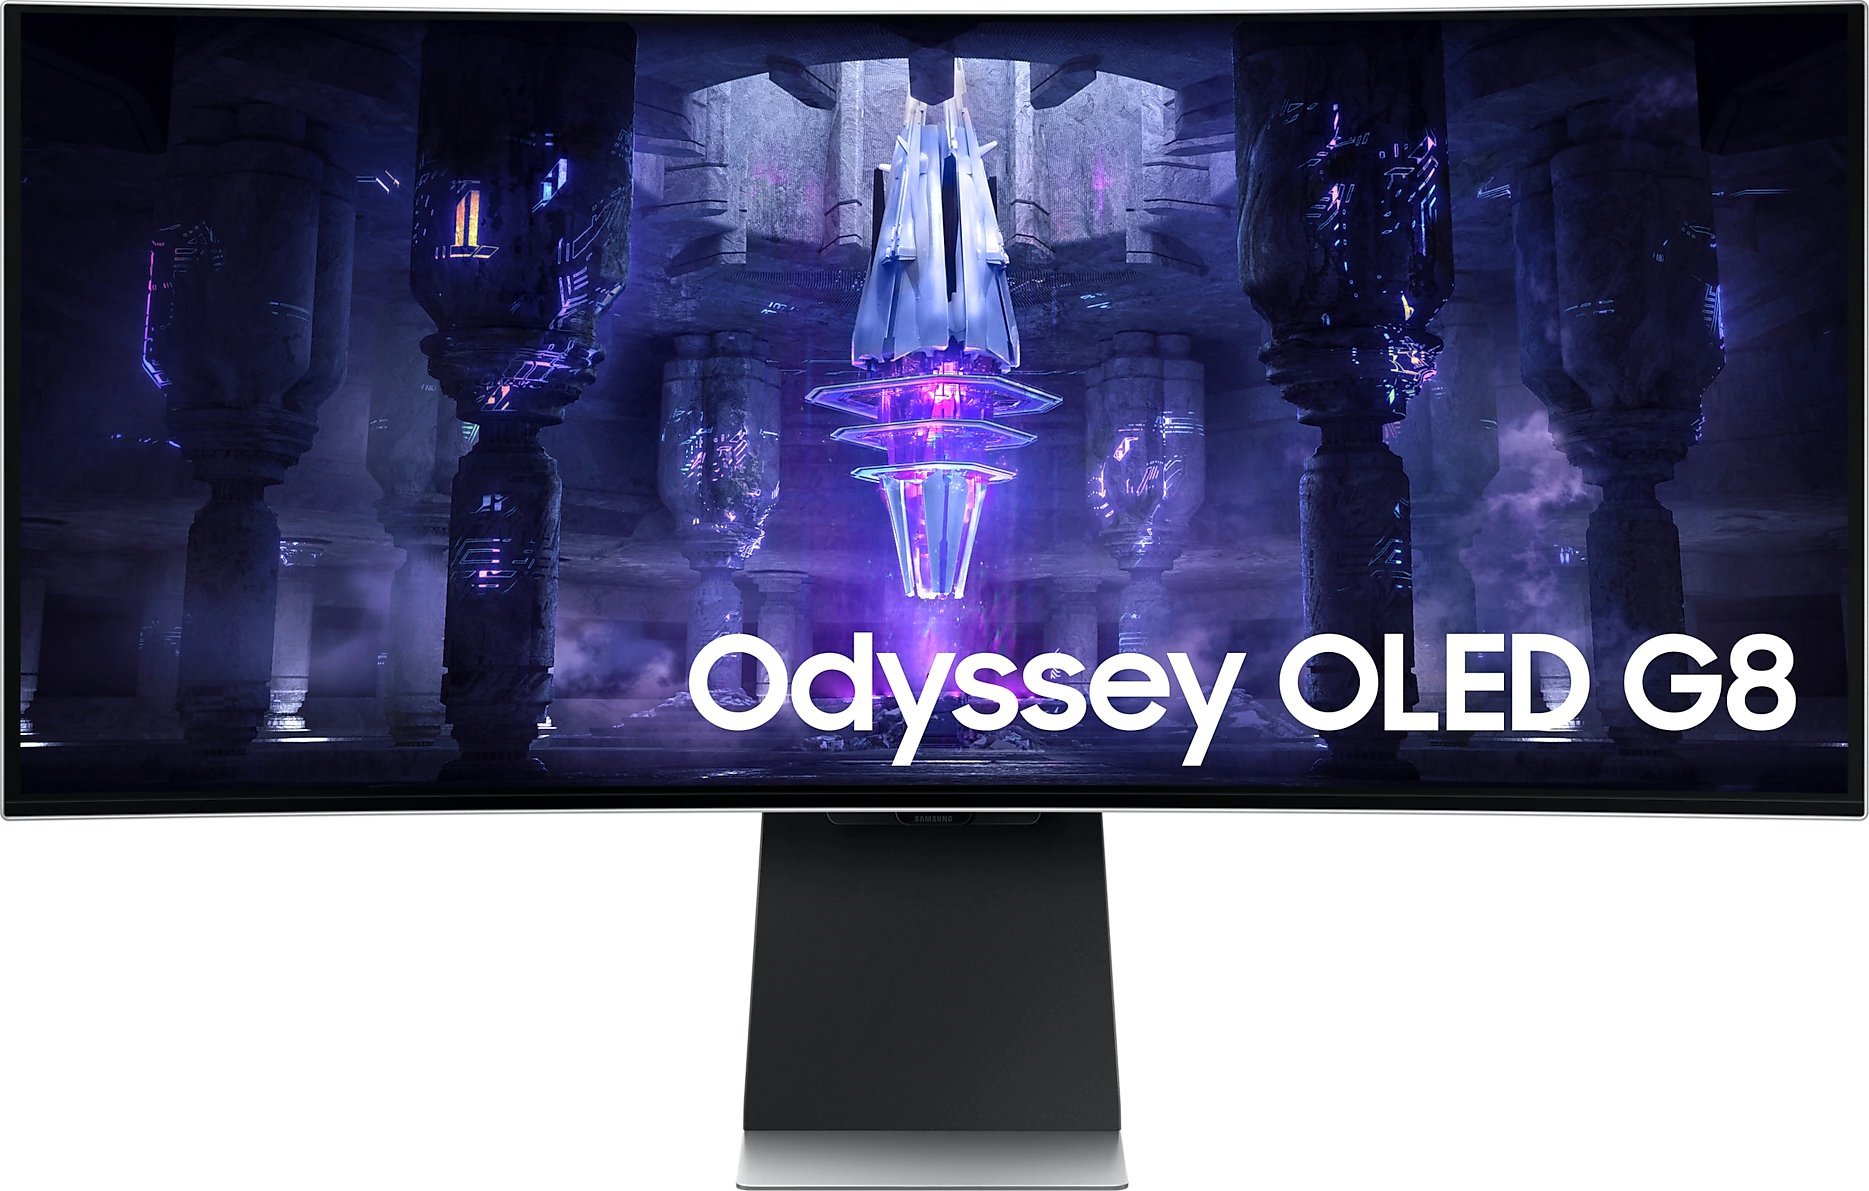 Samsung Odyssey OLED G8 S34BG850SUX monitors